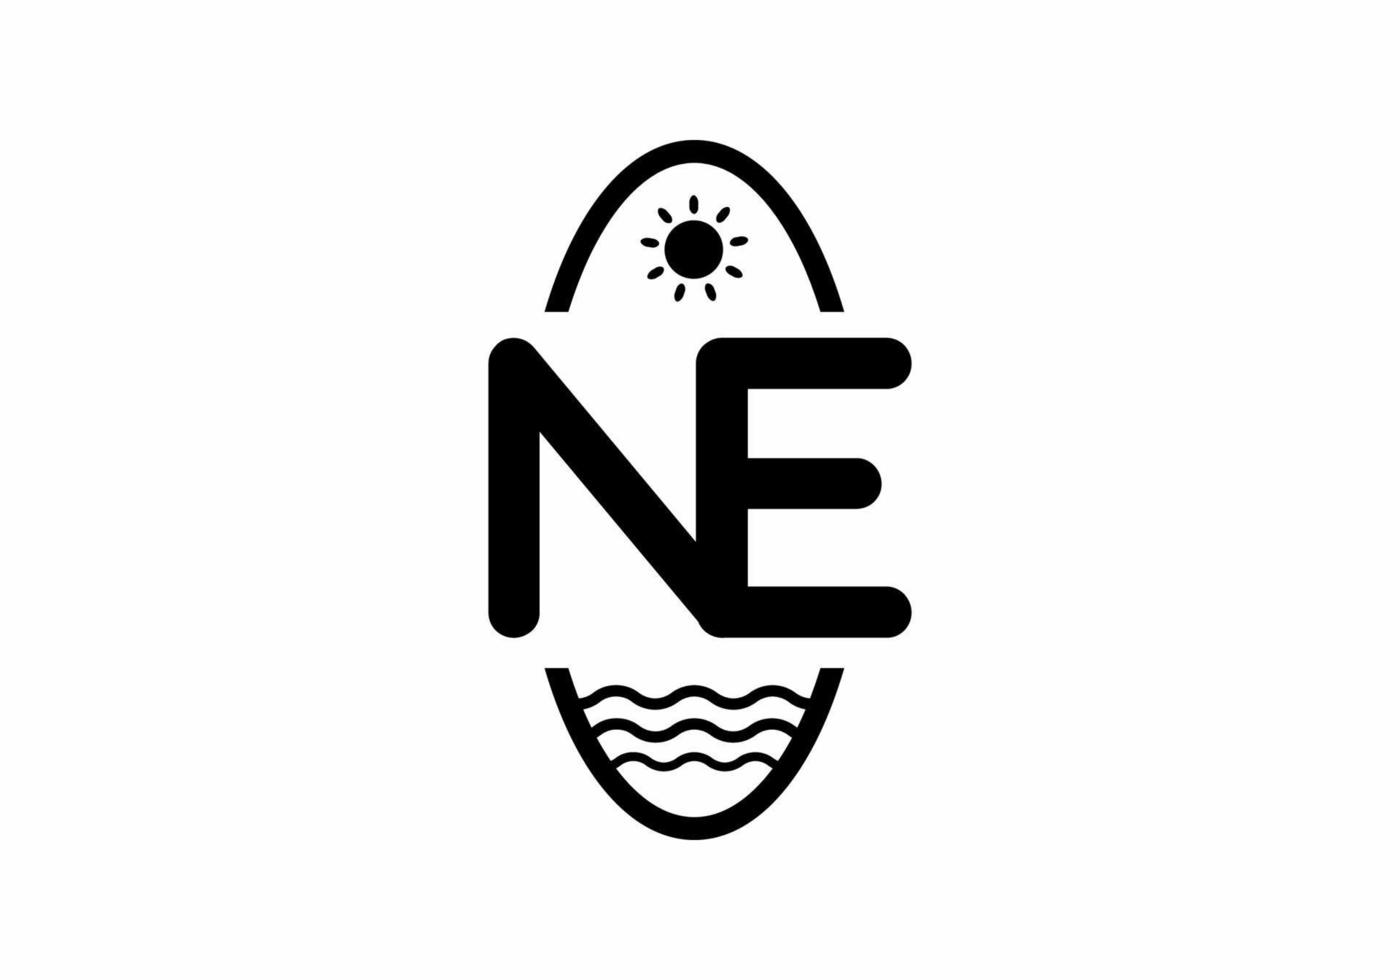 Black NE initial letter in oval shape vector